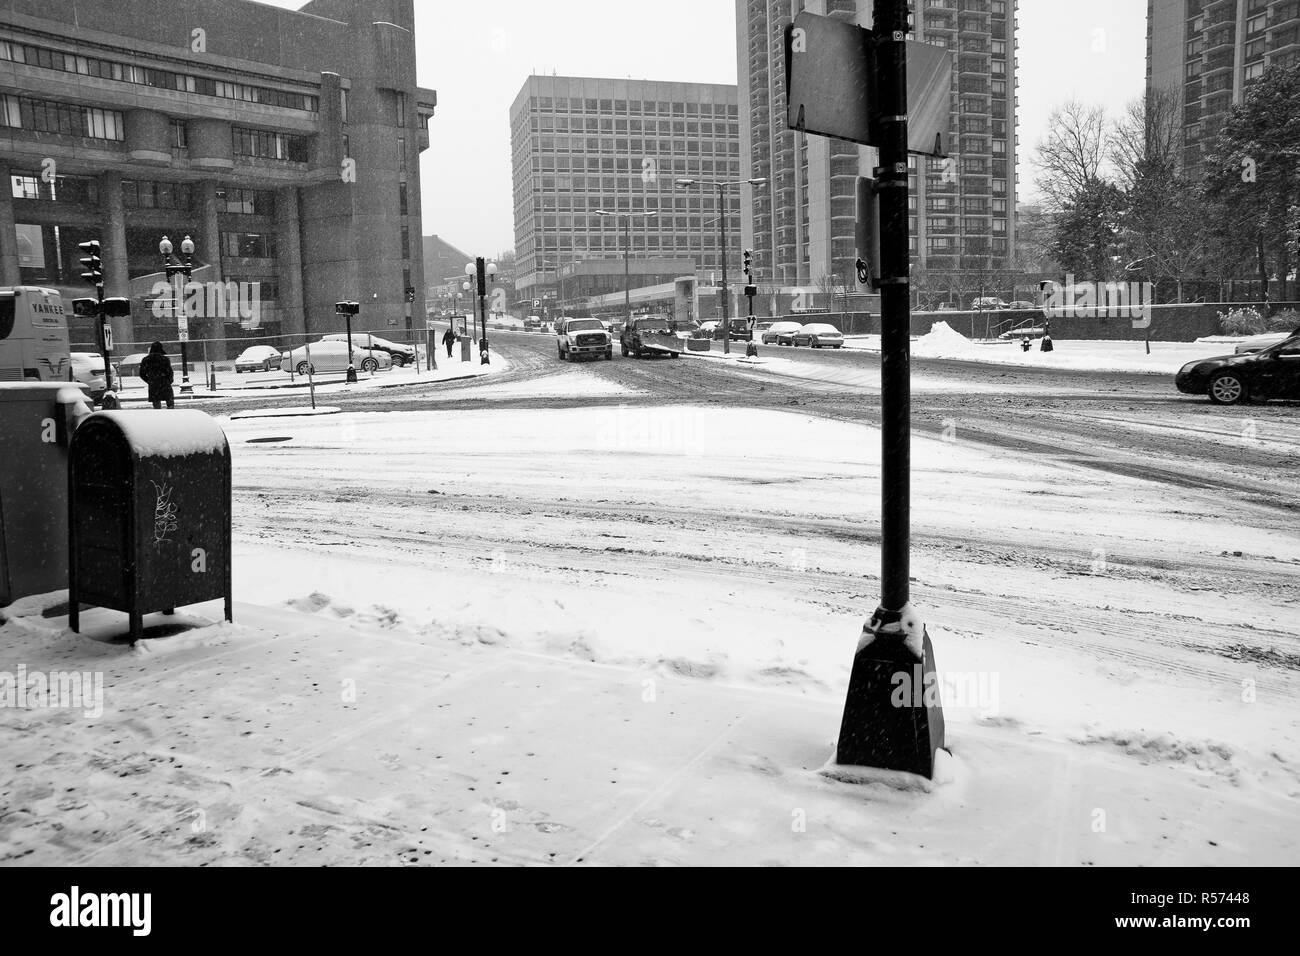 Boston, Massachusett - janvier 16, 2012 : Rues et routes d'une ville avec de la glace gelée par d'intenses chutes de neige. Banque D'Images